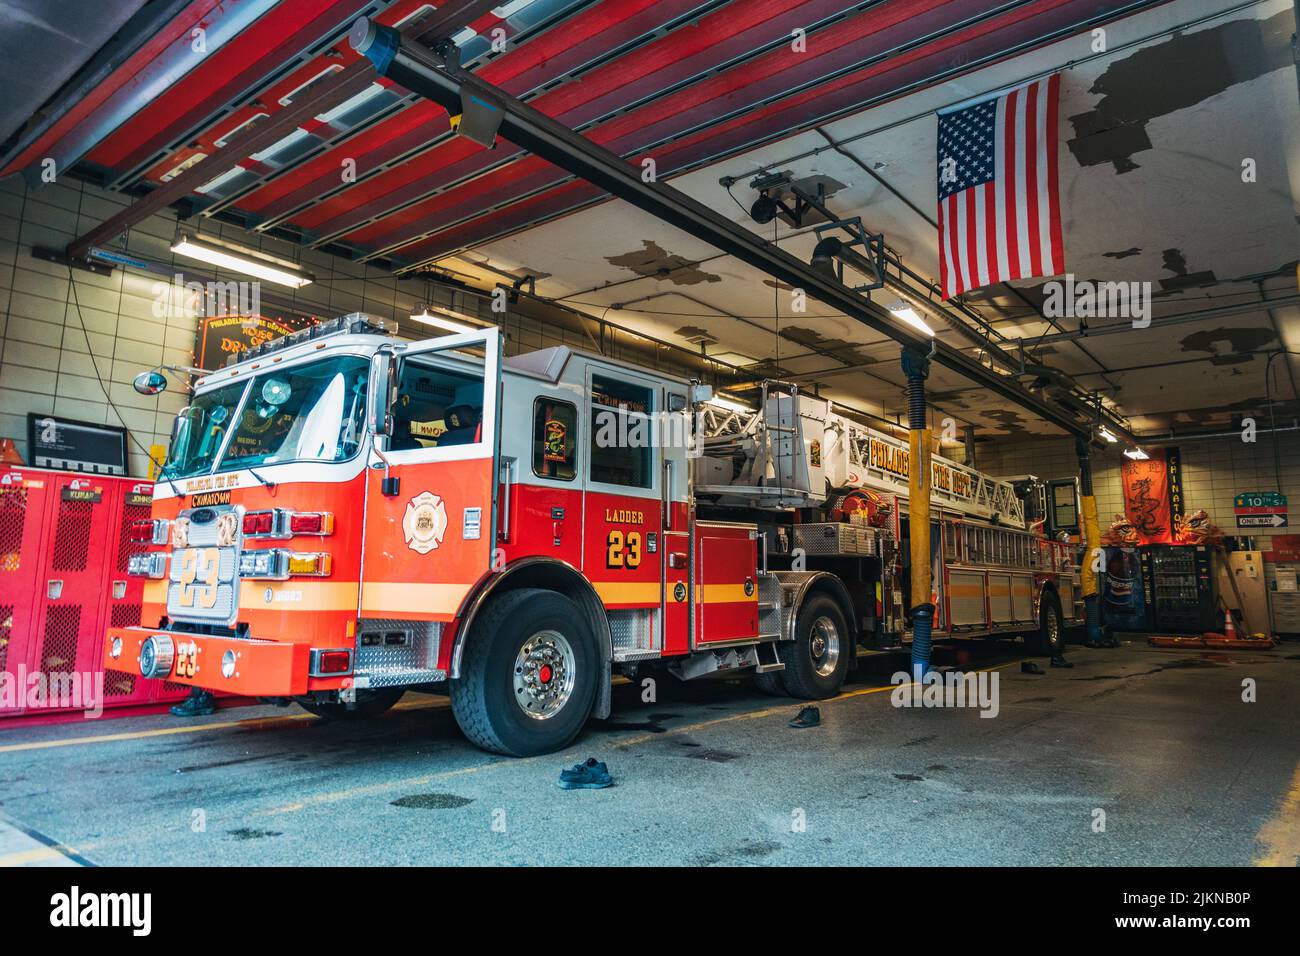 Camion de pompiers Ladder 23 à l'intérieur de la gare Chinatown du service des incendies de Philadelphie Banque D'Images